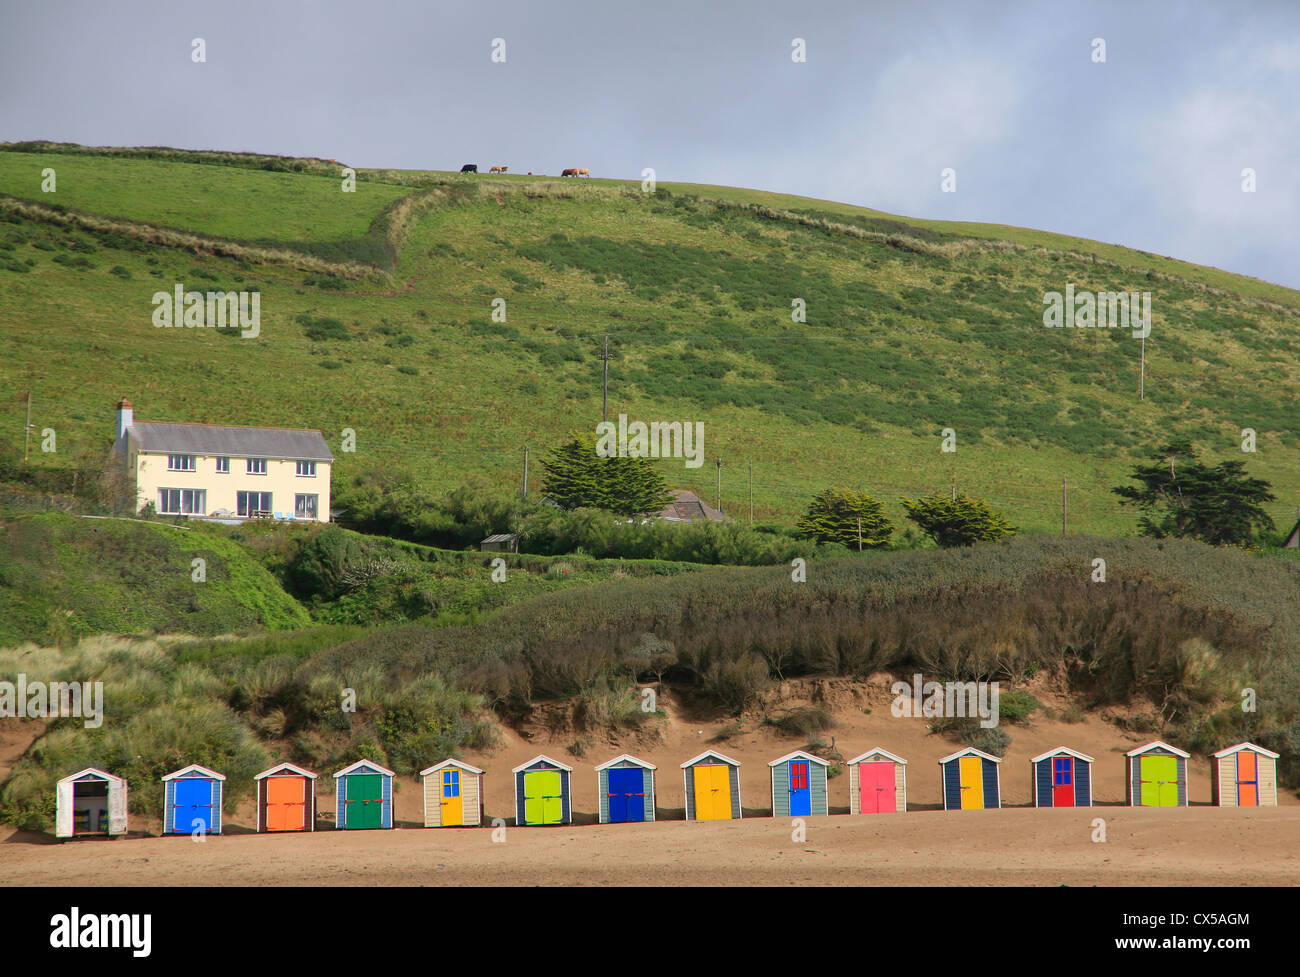 Reihe von bunten Strandhäuschen mit weißen Haus auf grasbewachsenen Hügel hinter und Kühe am Horizont. Stockfoto